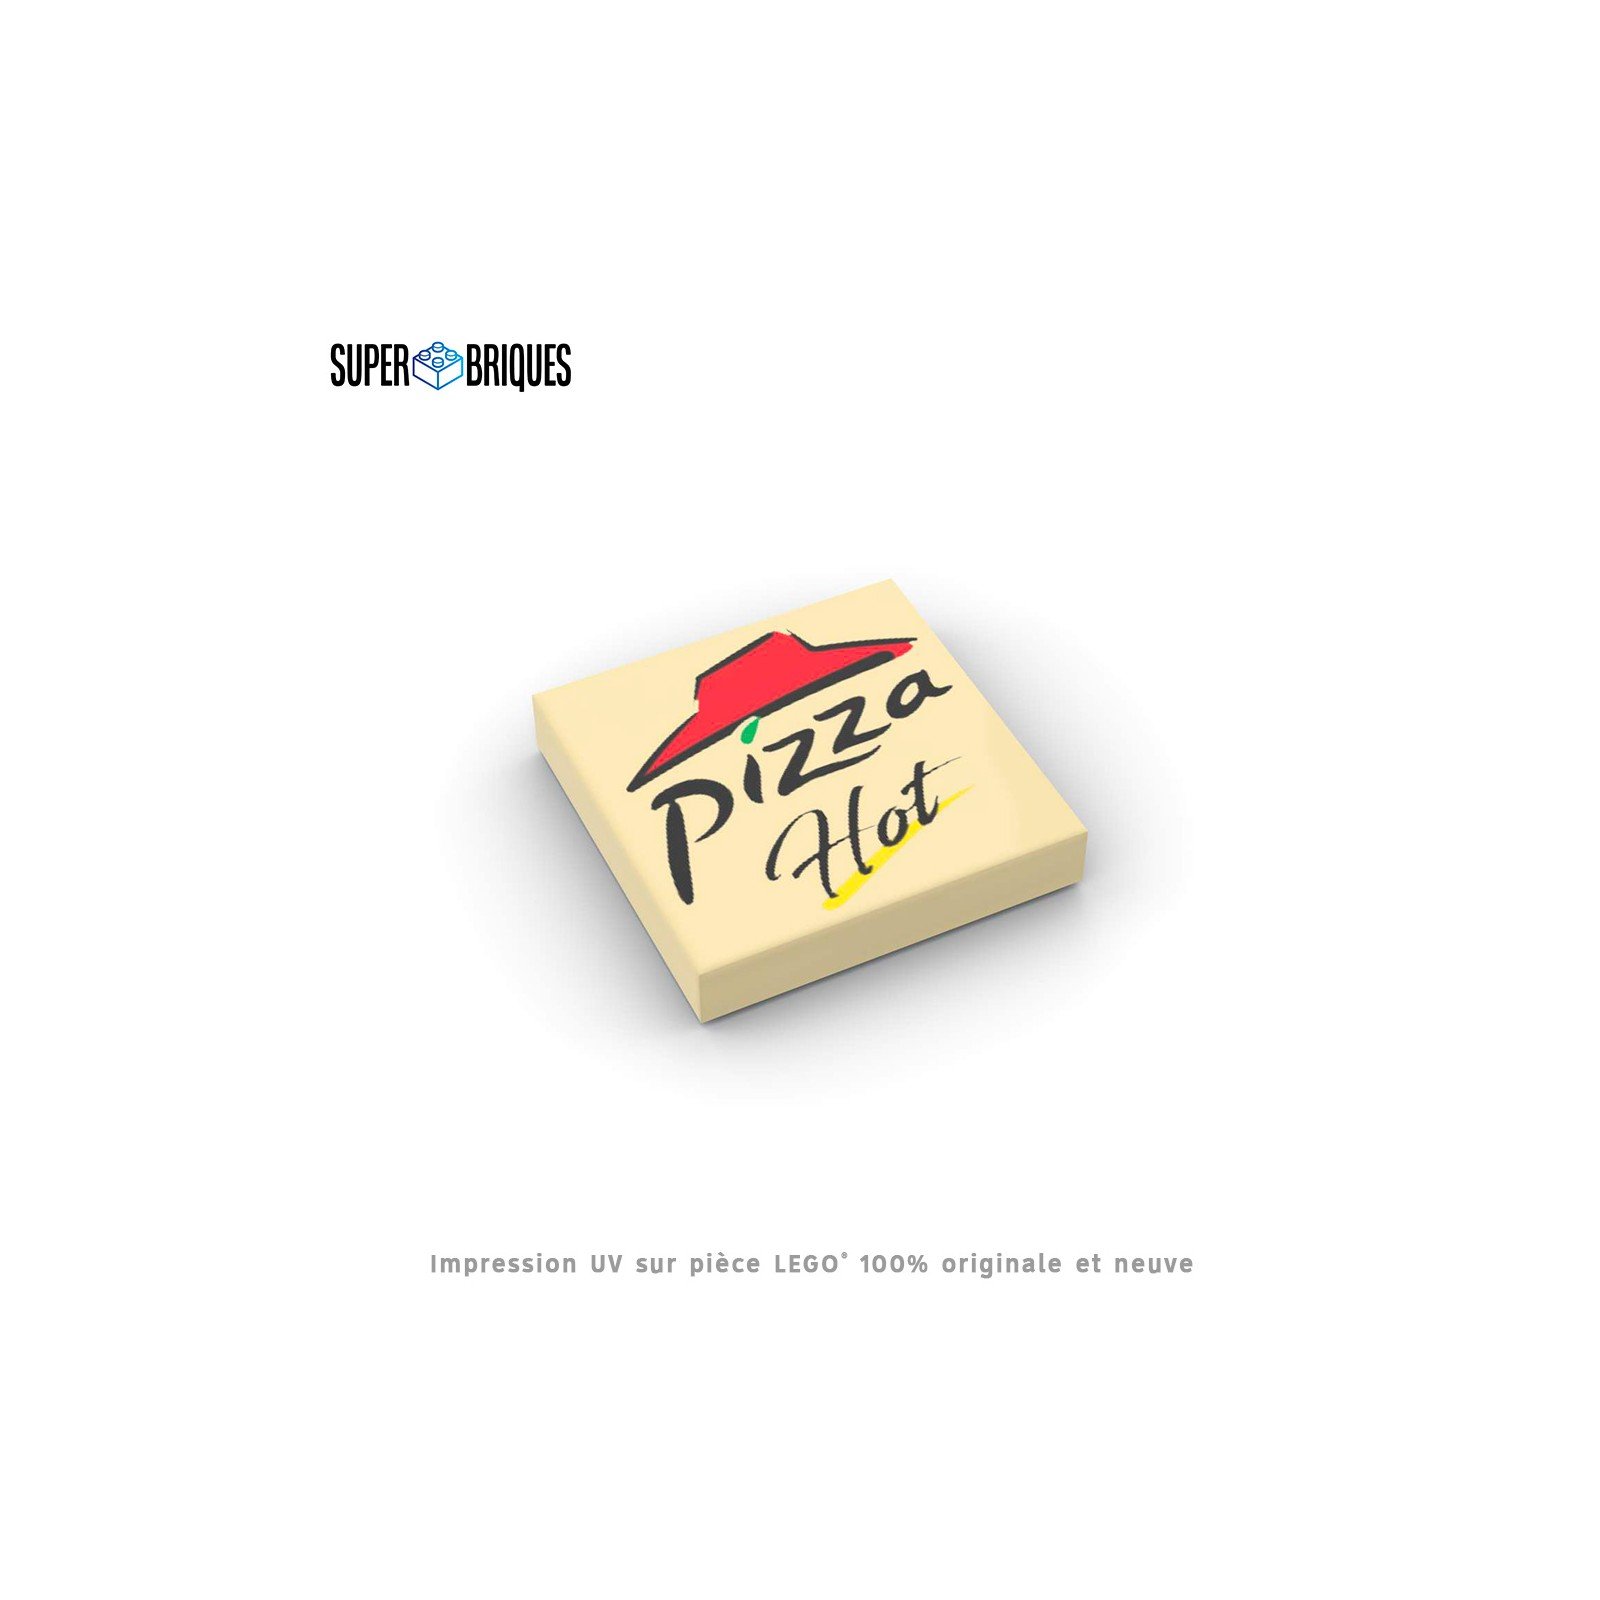 Boite de pizza "Pizza Hot" 2x2 - Pièce LEGO® customisée